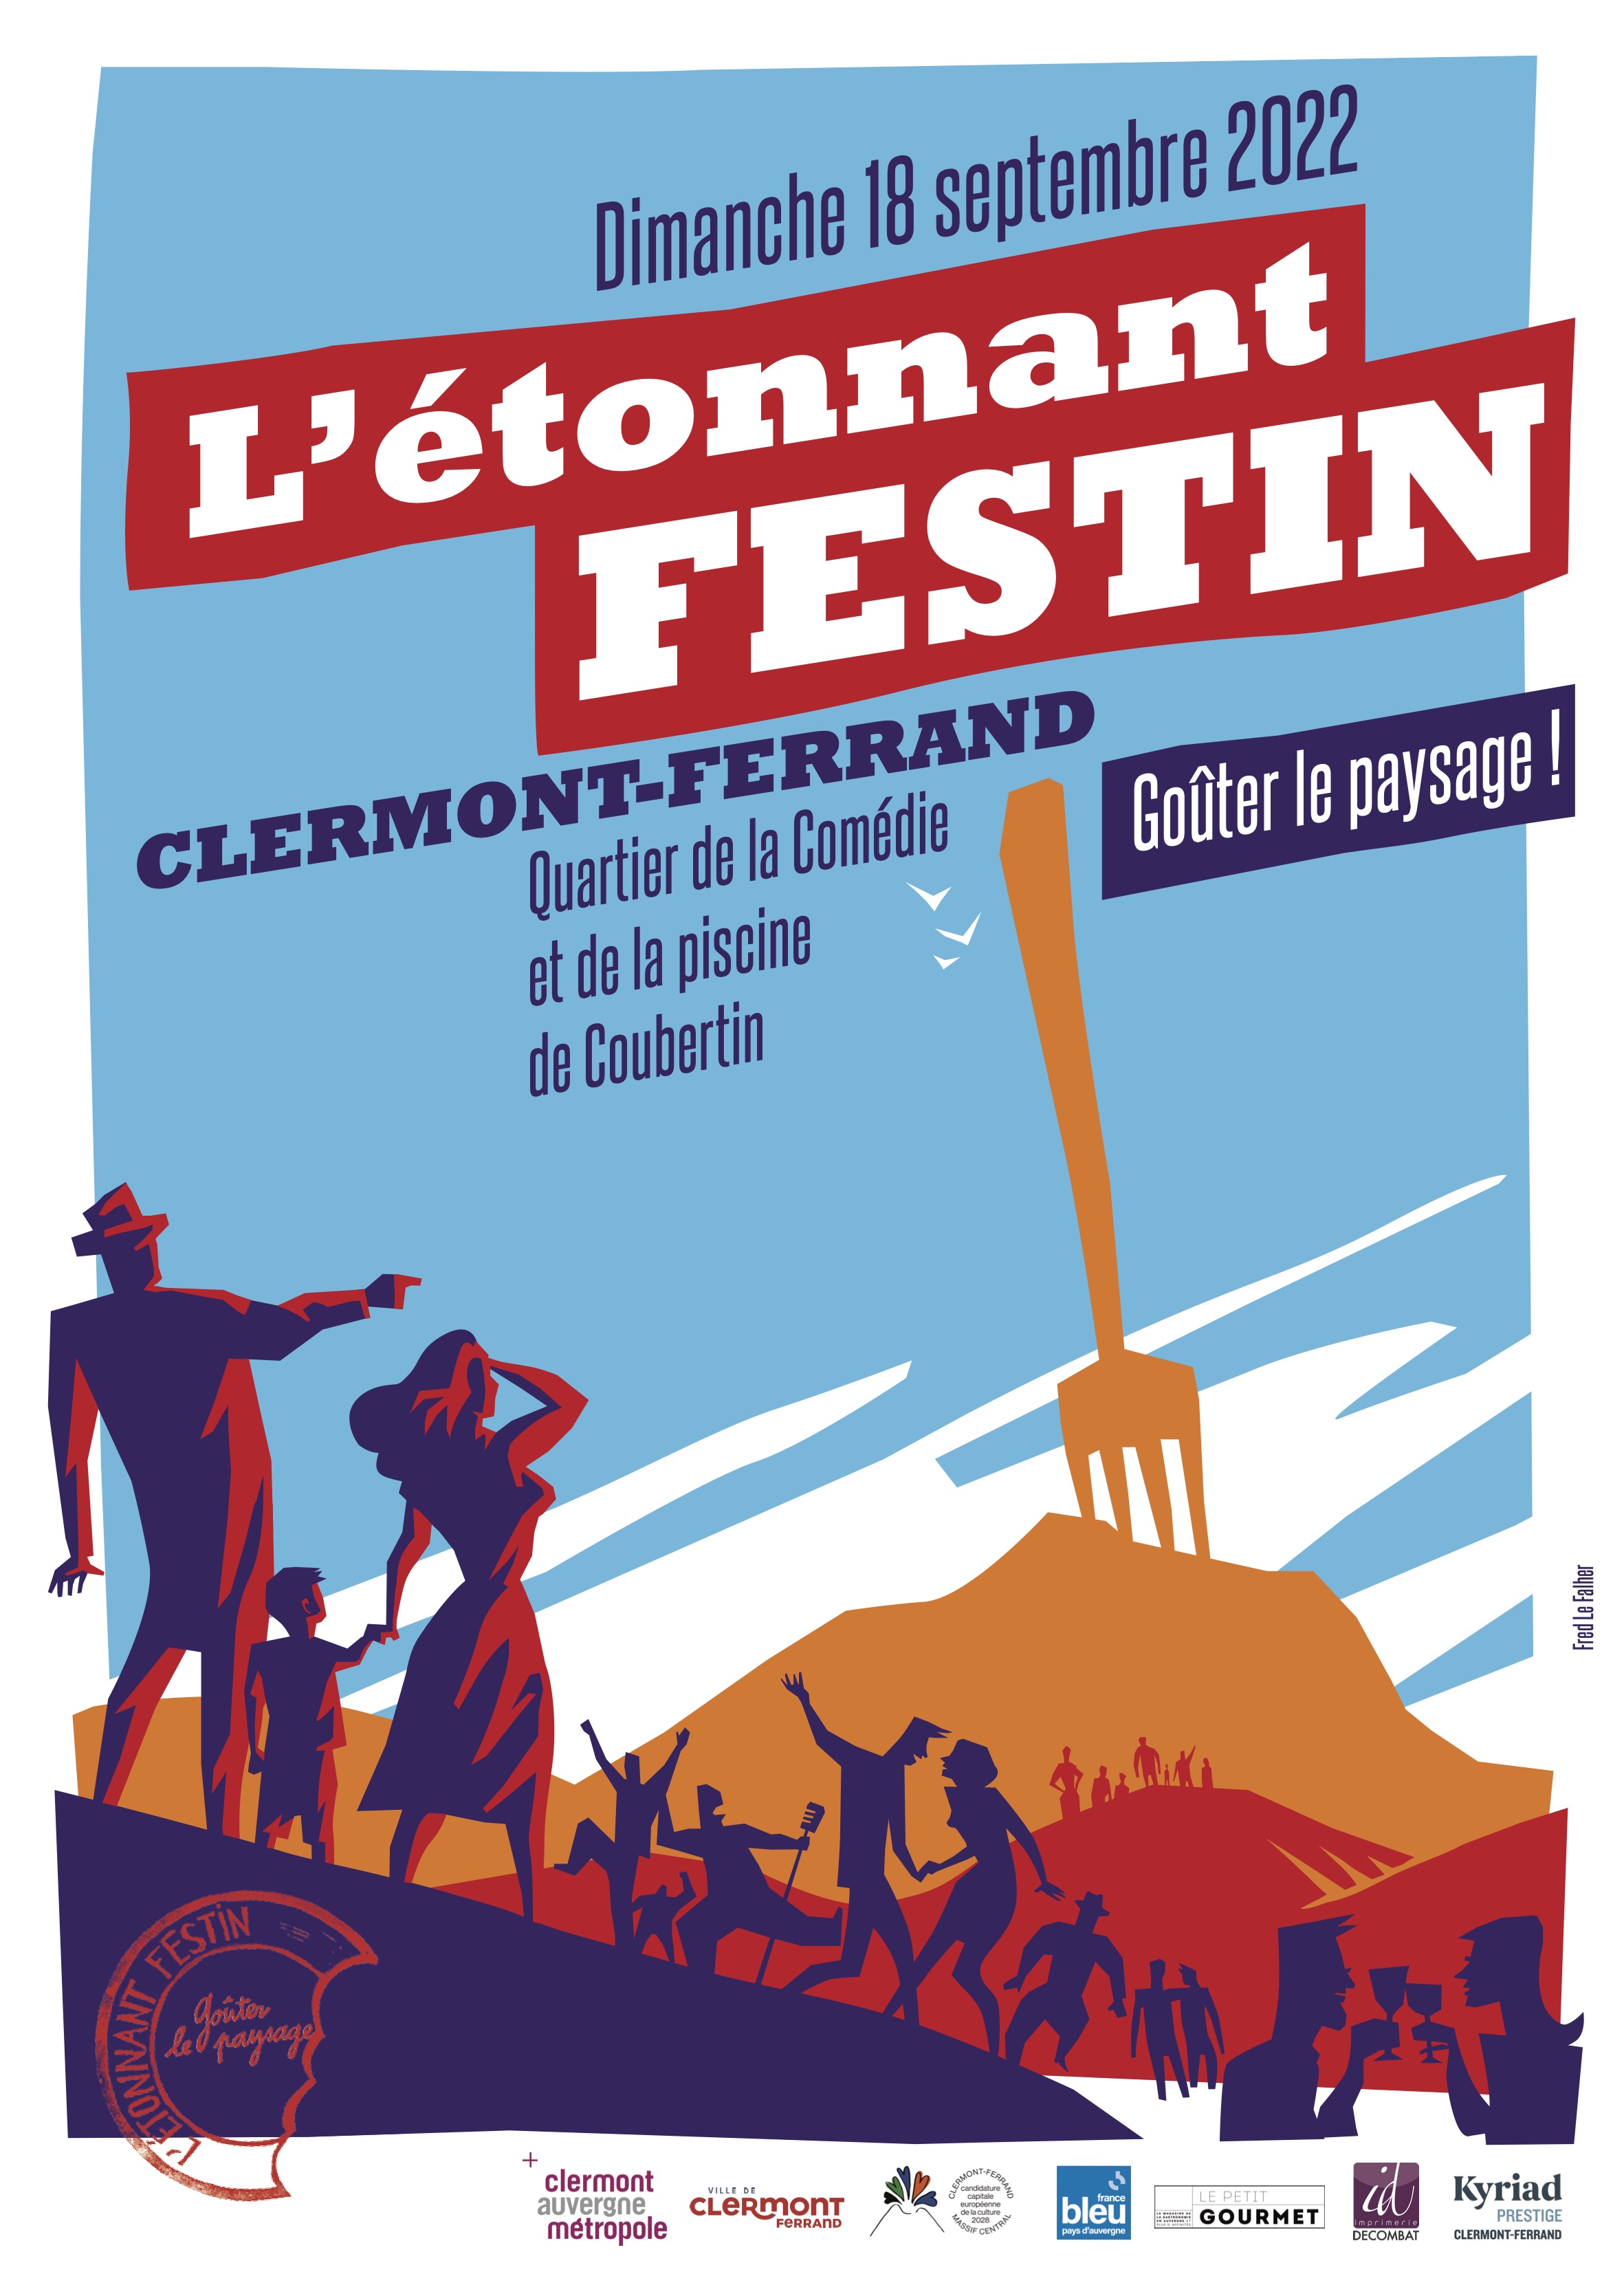 Le Solide Almanach Nourricier de Clermont Auvergne - L'Étonnant Festin, Goûter le paysage, Clermont-Ferrand